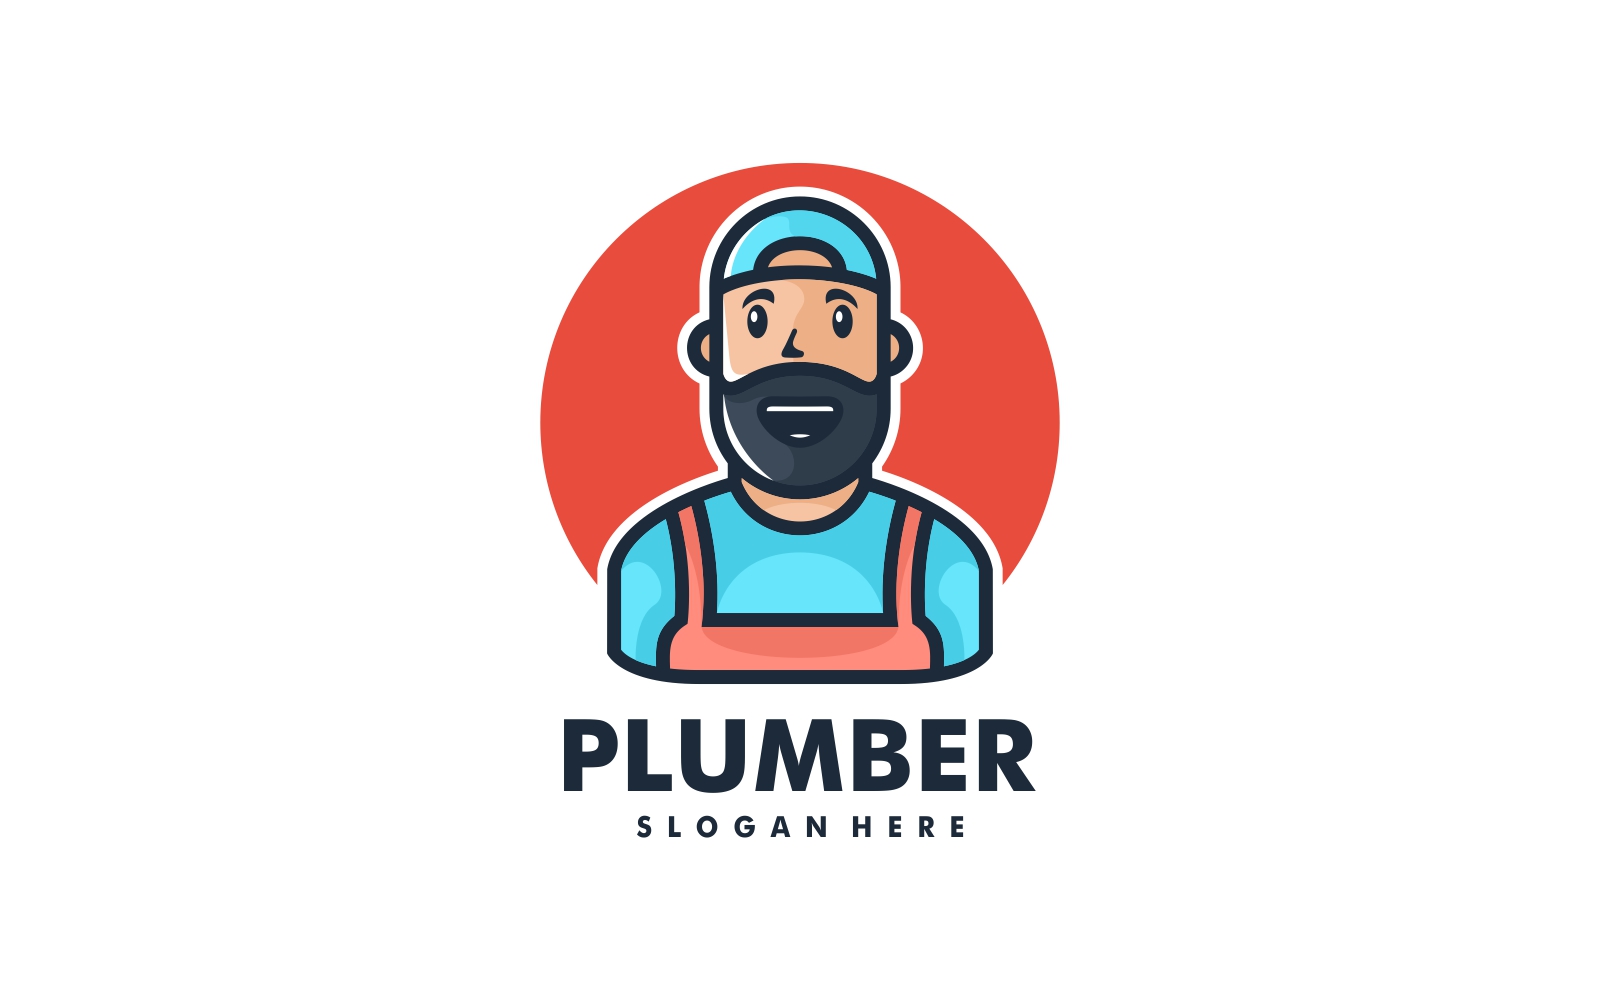 Plumber Mascot Cartoon Logo